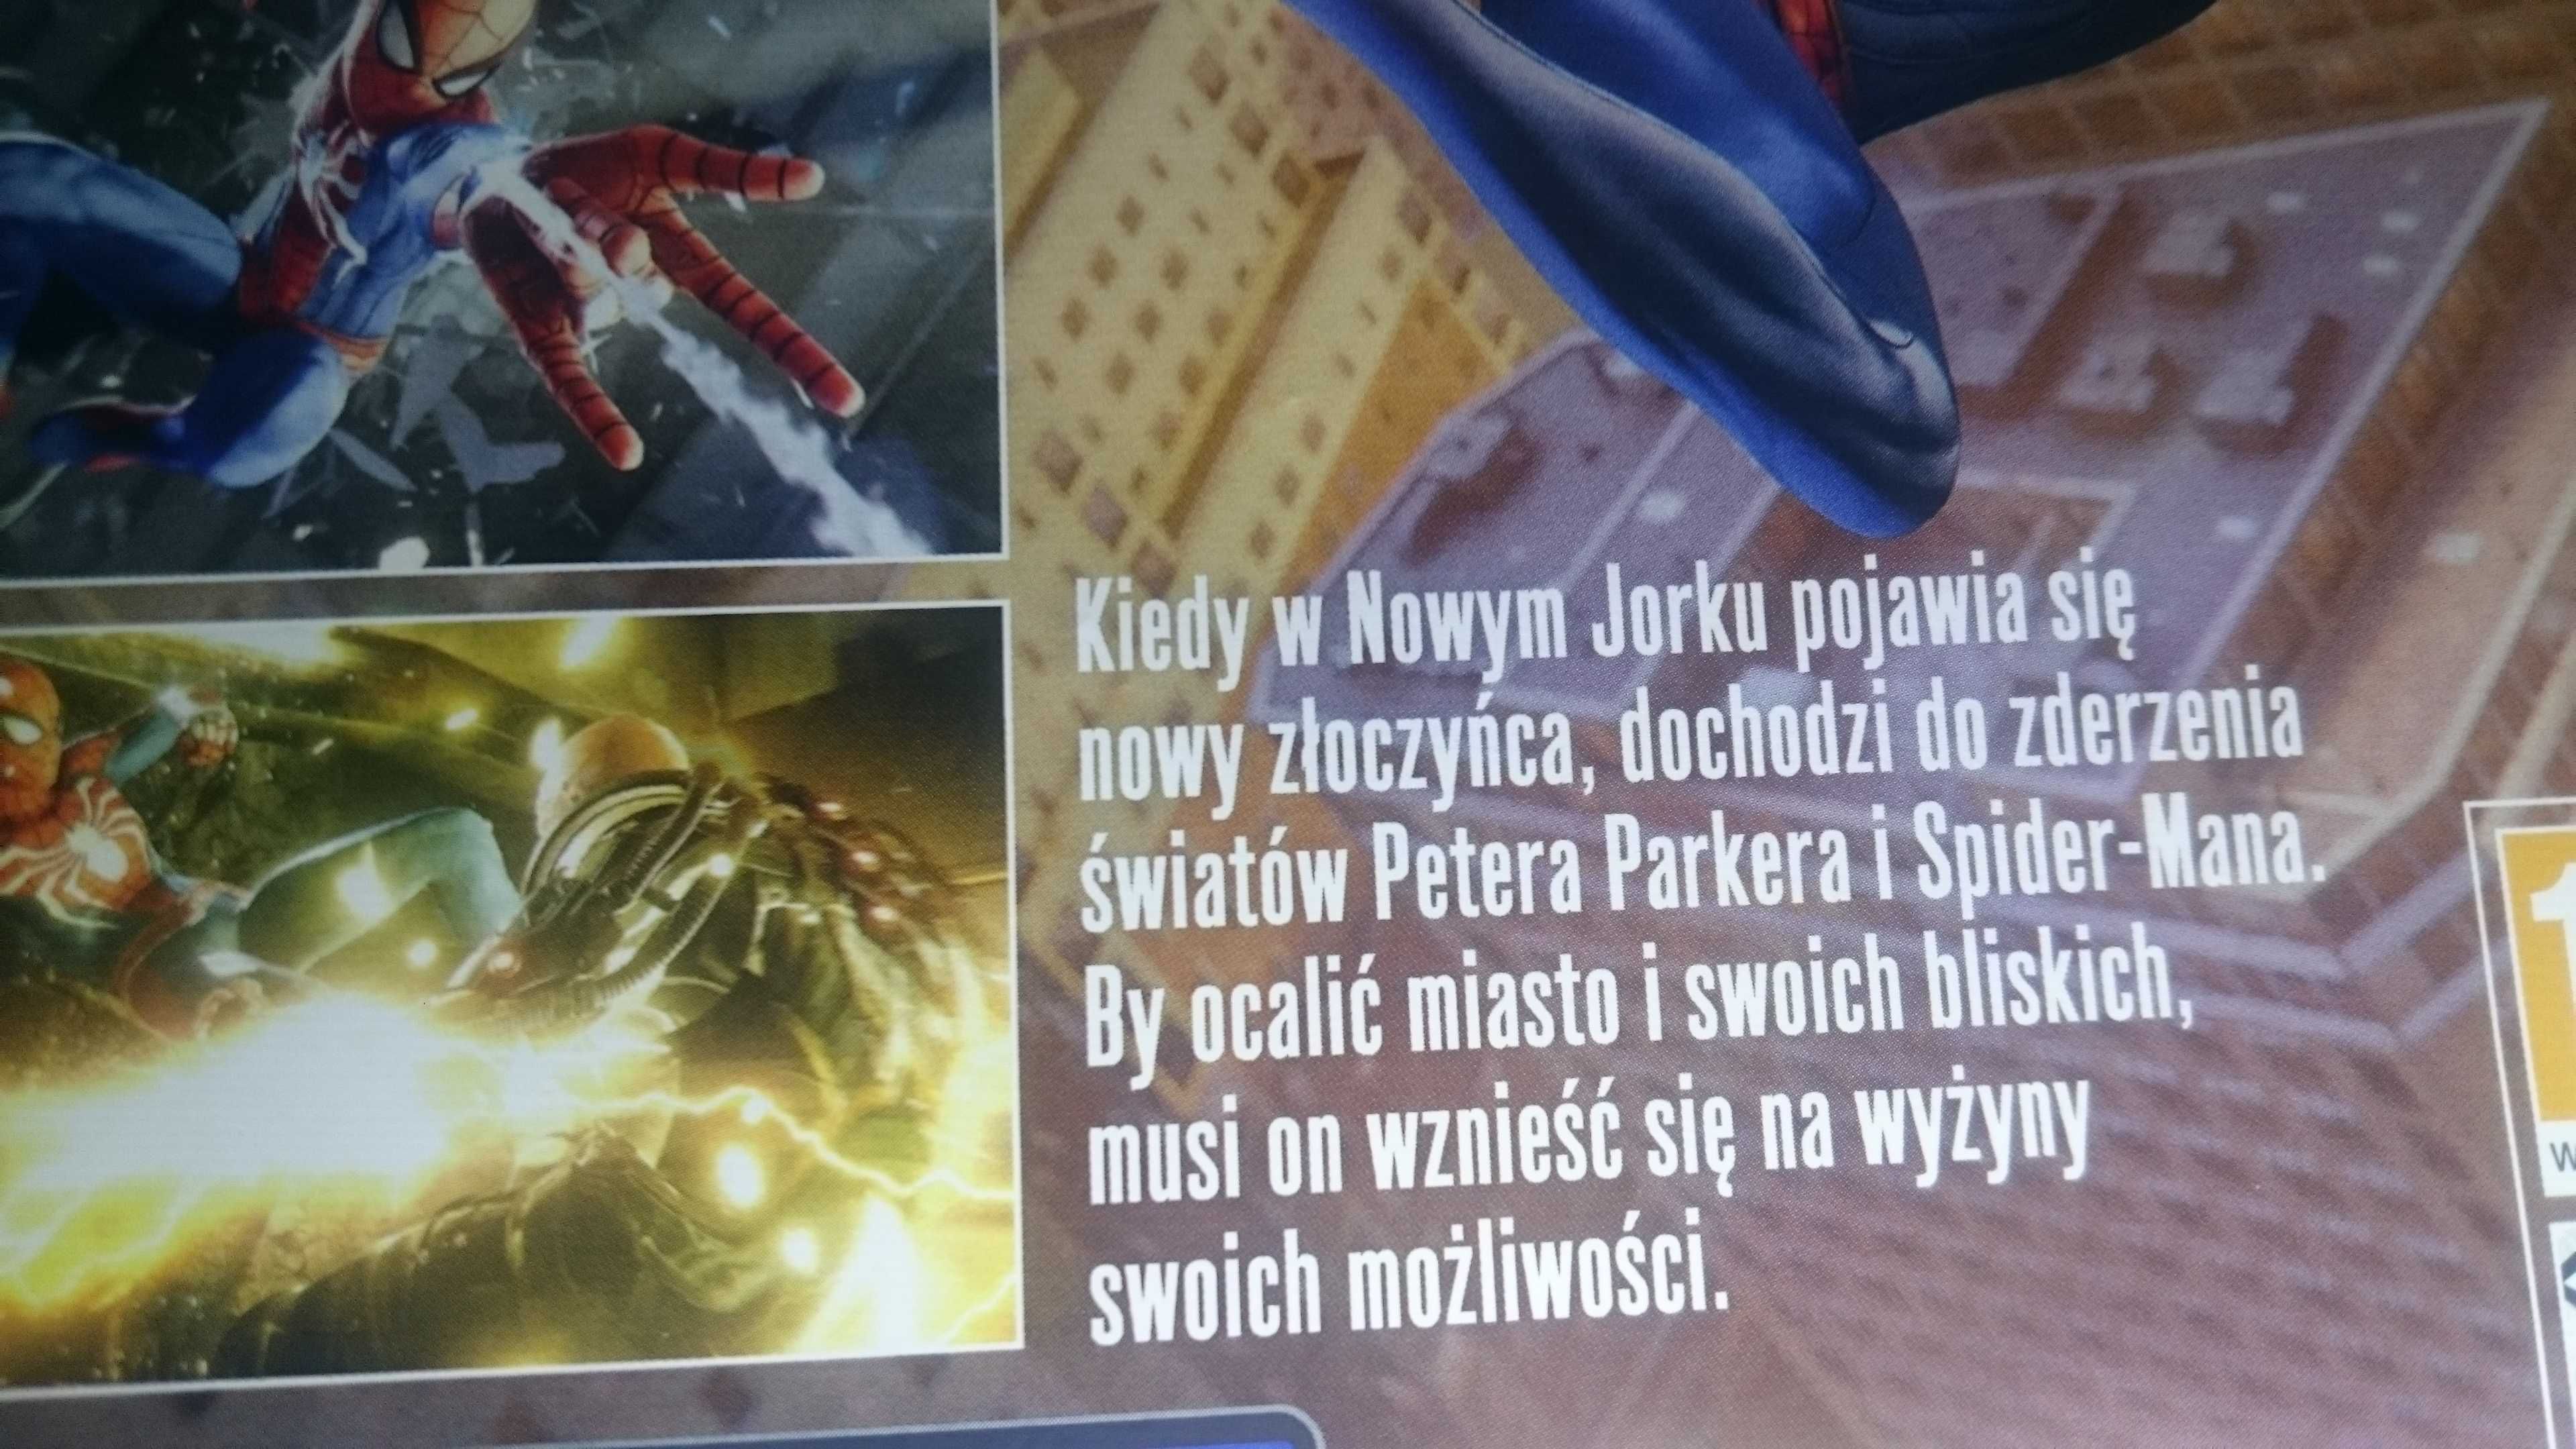 Spiderman PS4 Playstation 4 POLSKA GTA V Marvel God of War